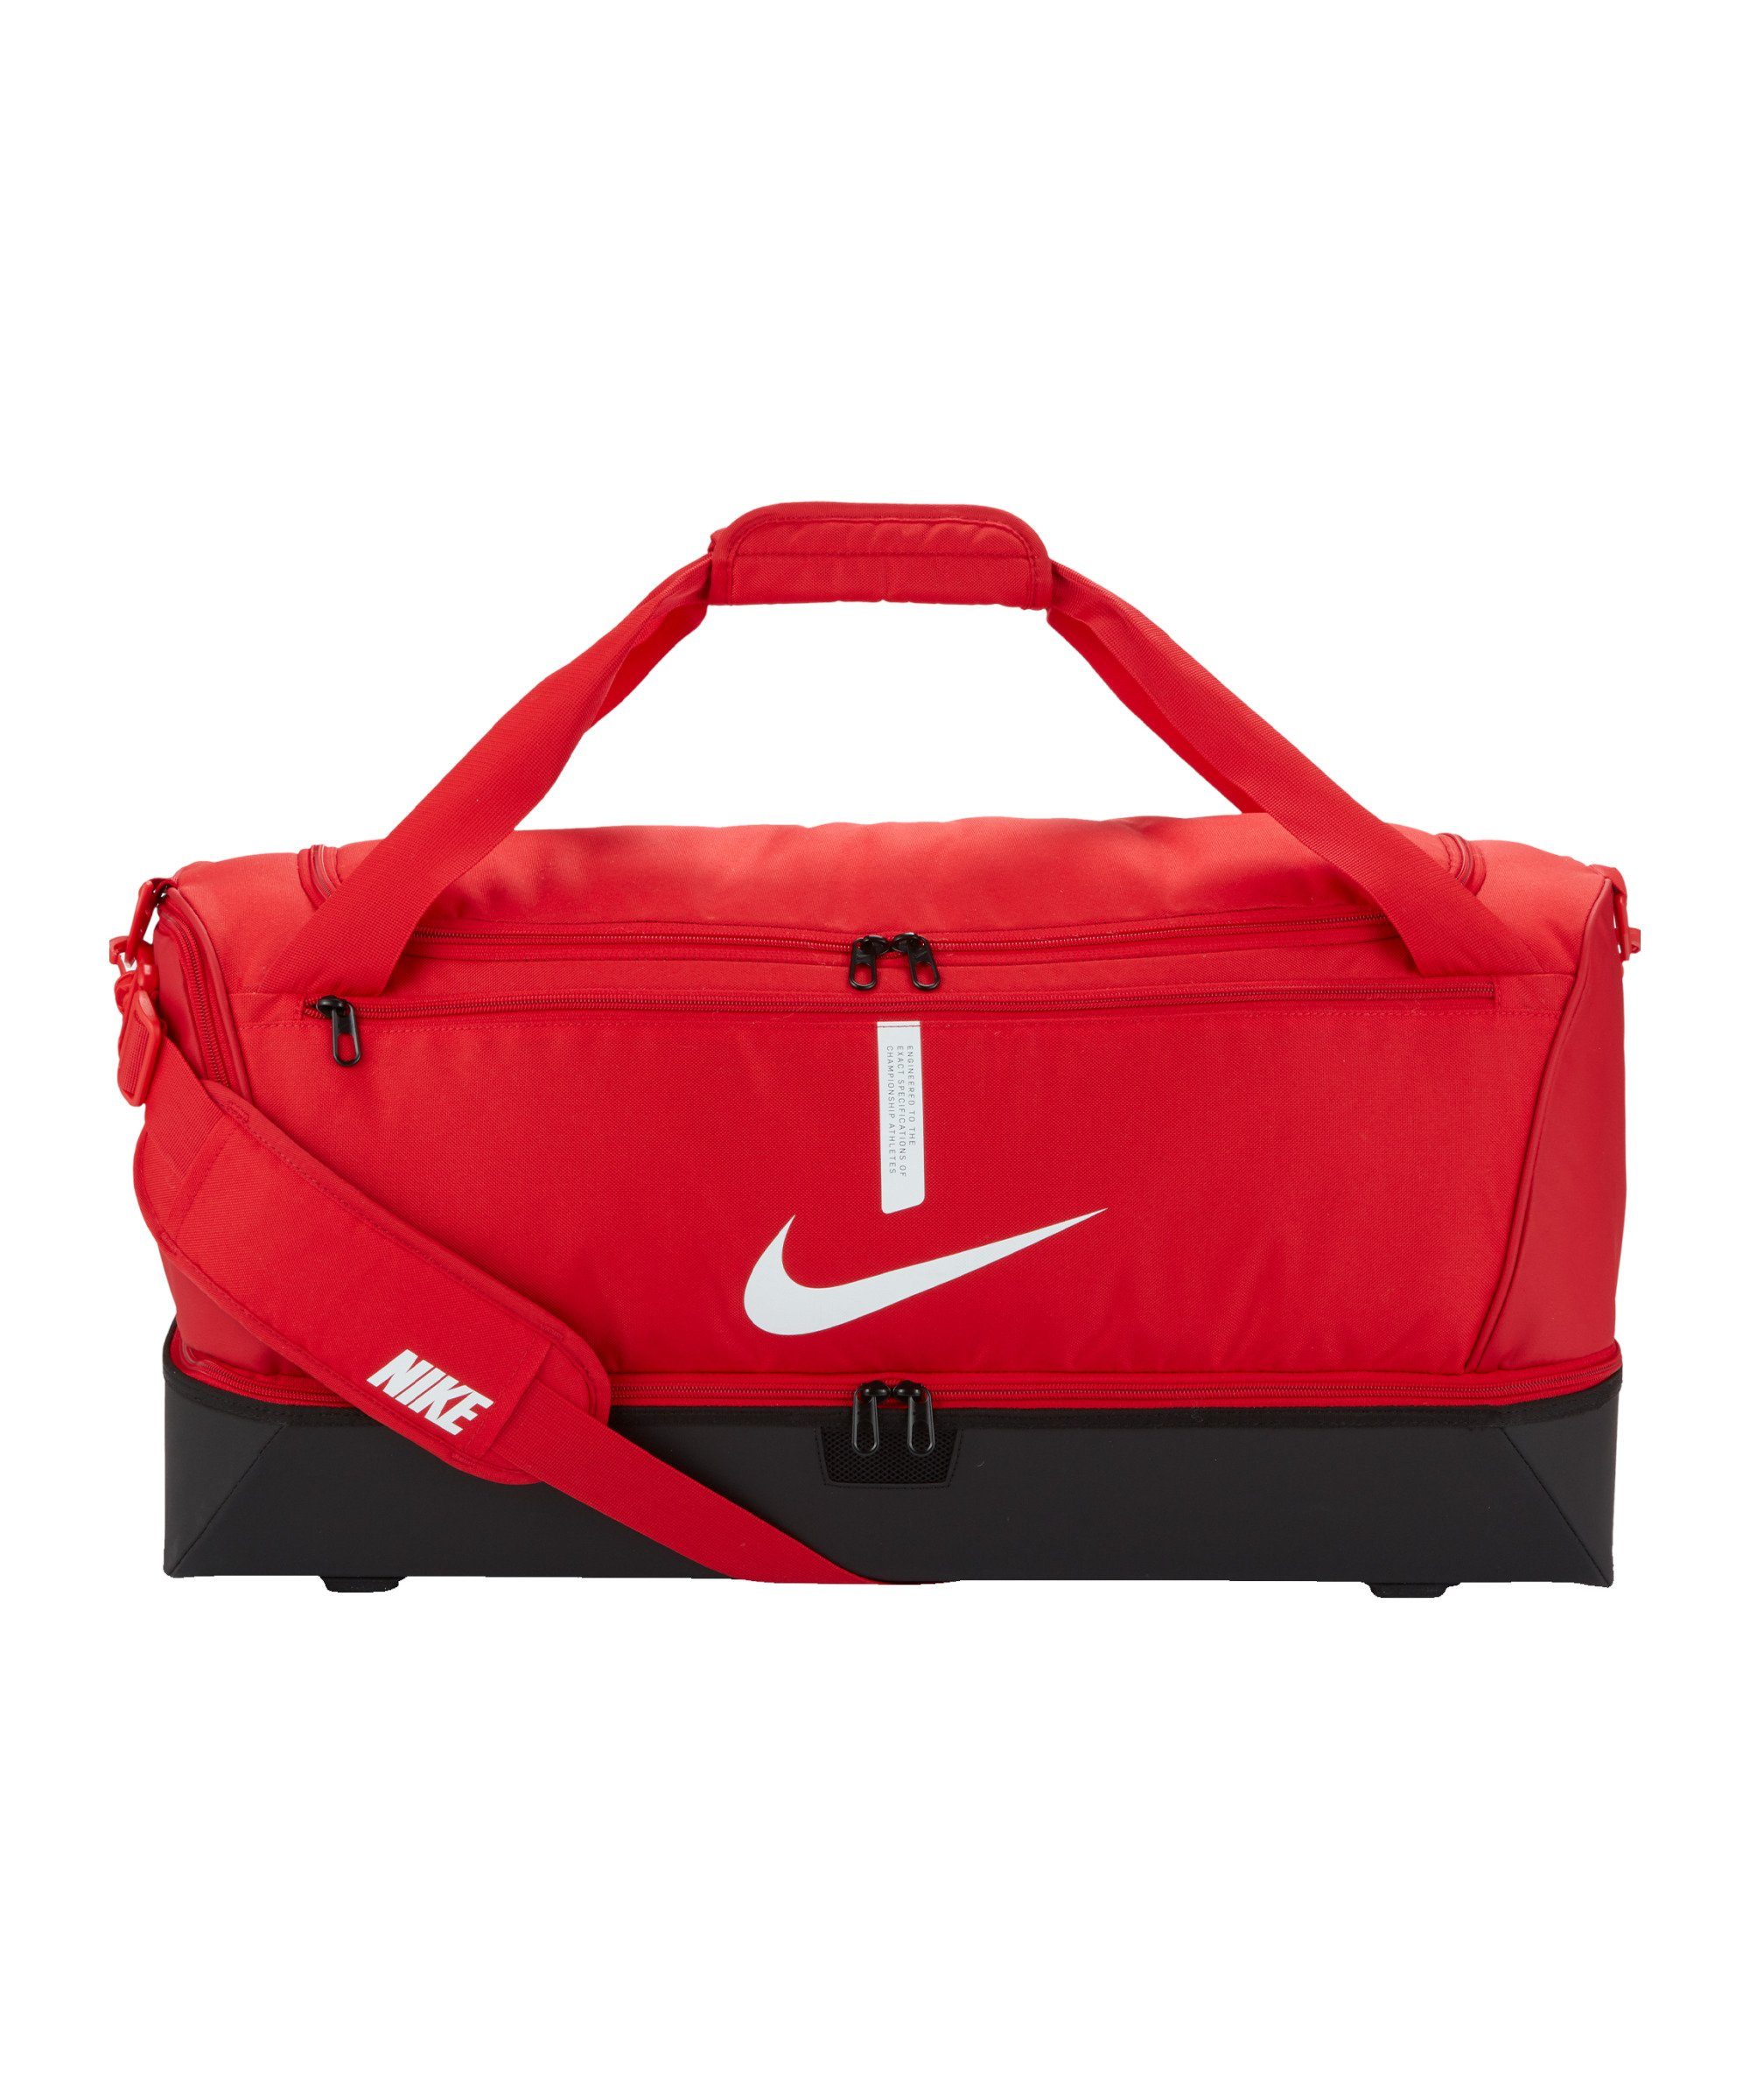 rotschwarzweiss Large, Schulter Team Academy Tasche Nike Hardcase Freizeittasche